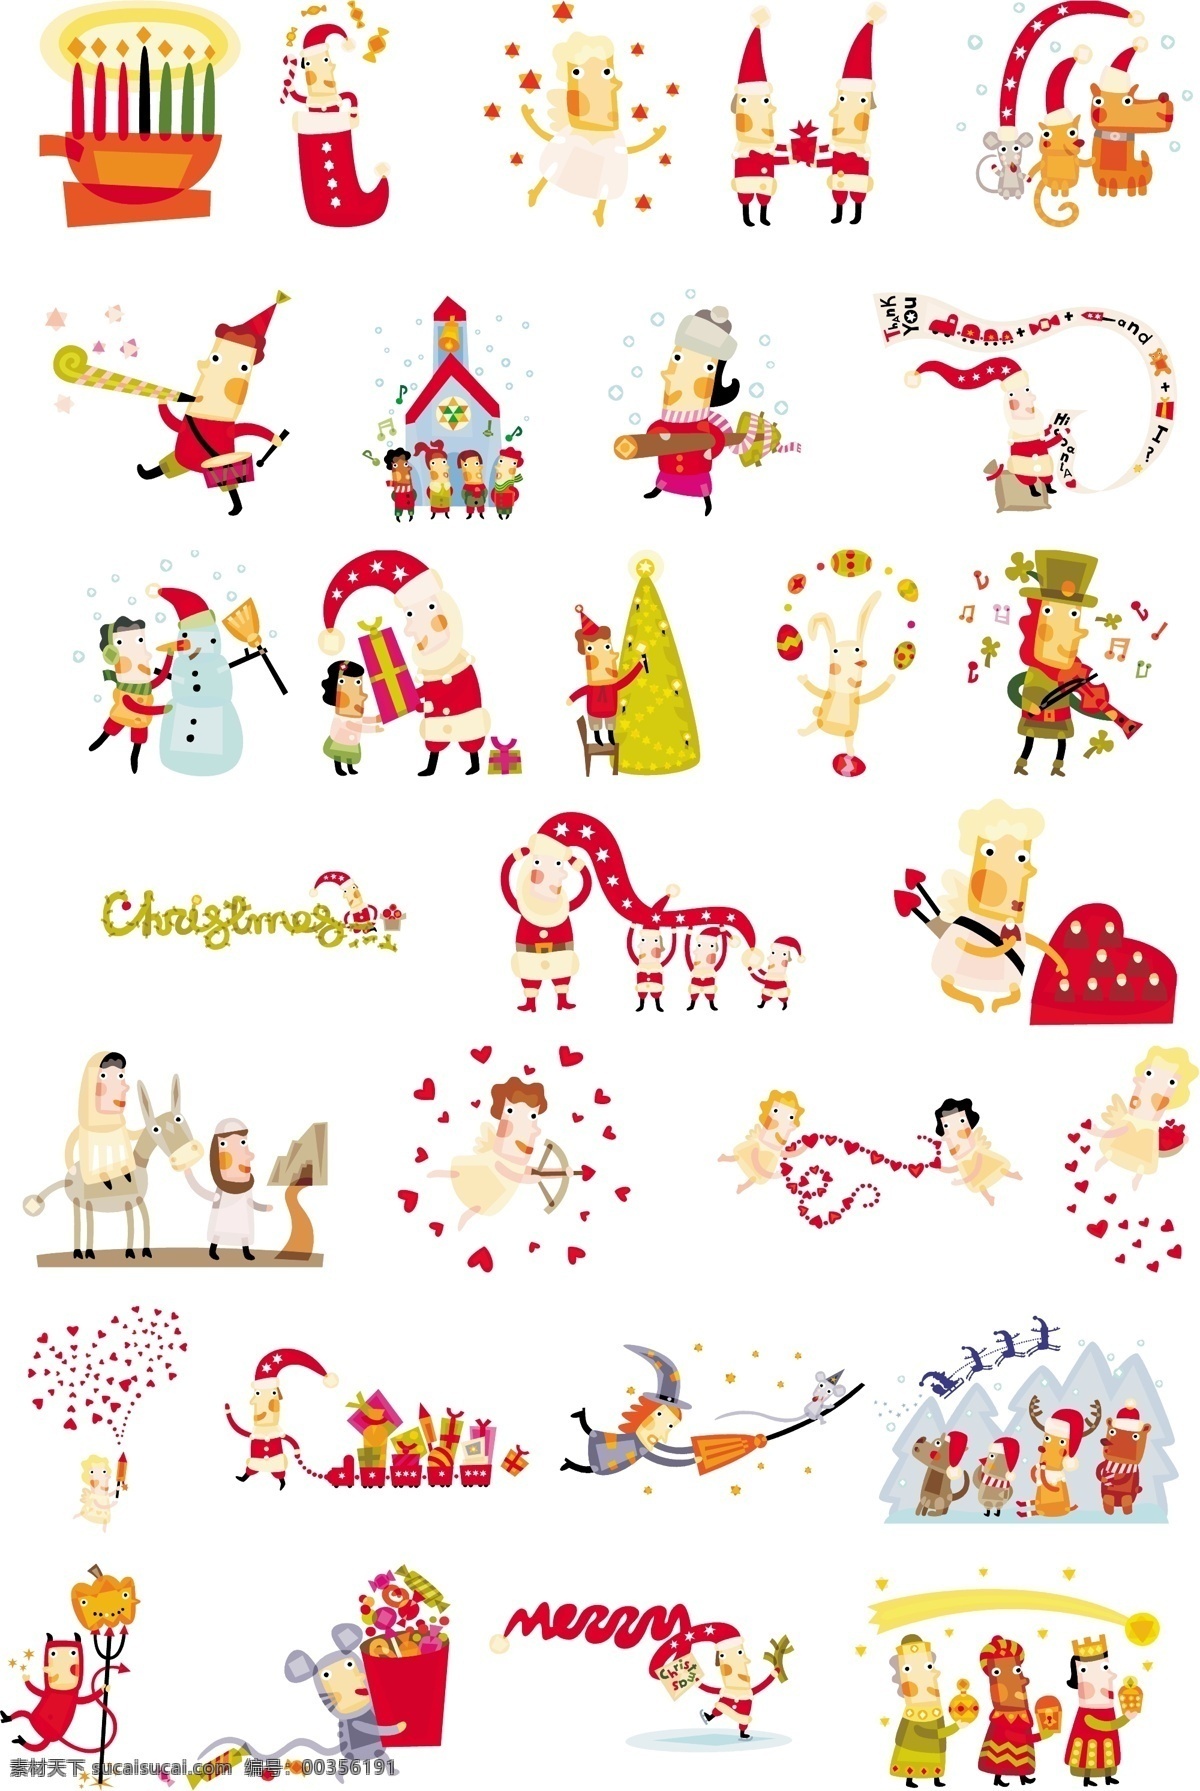 圣诞 插画 动物 房屋 卡通 驴 帽子 人物 圣诞节 圣诞老人 圣诞树 心 心形图案 图案 节日素材